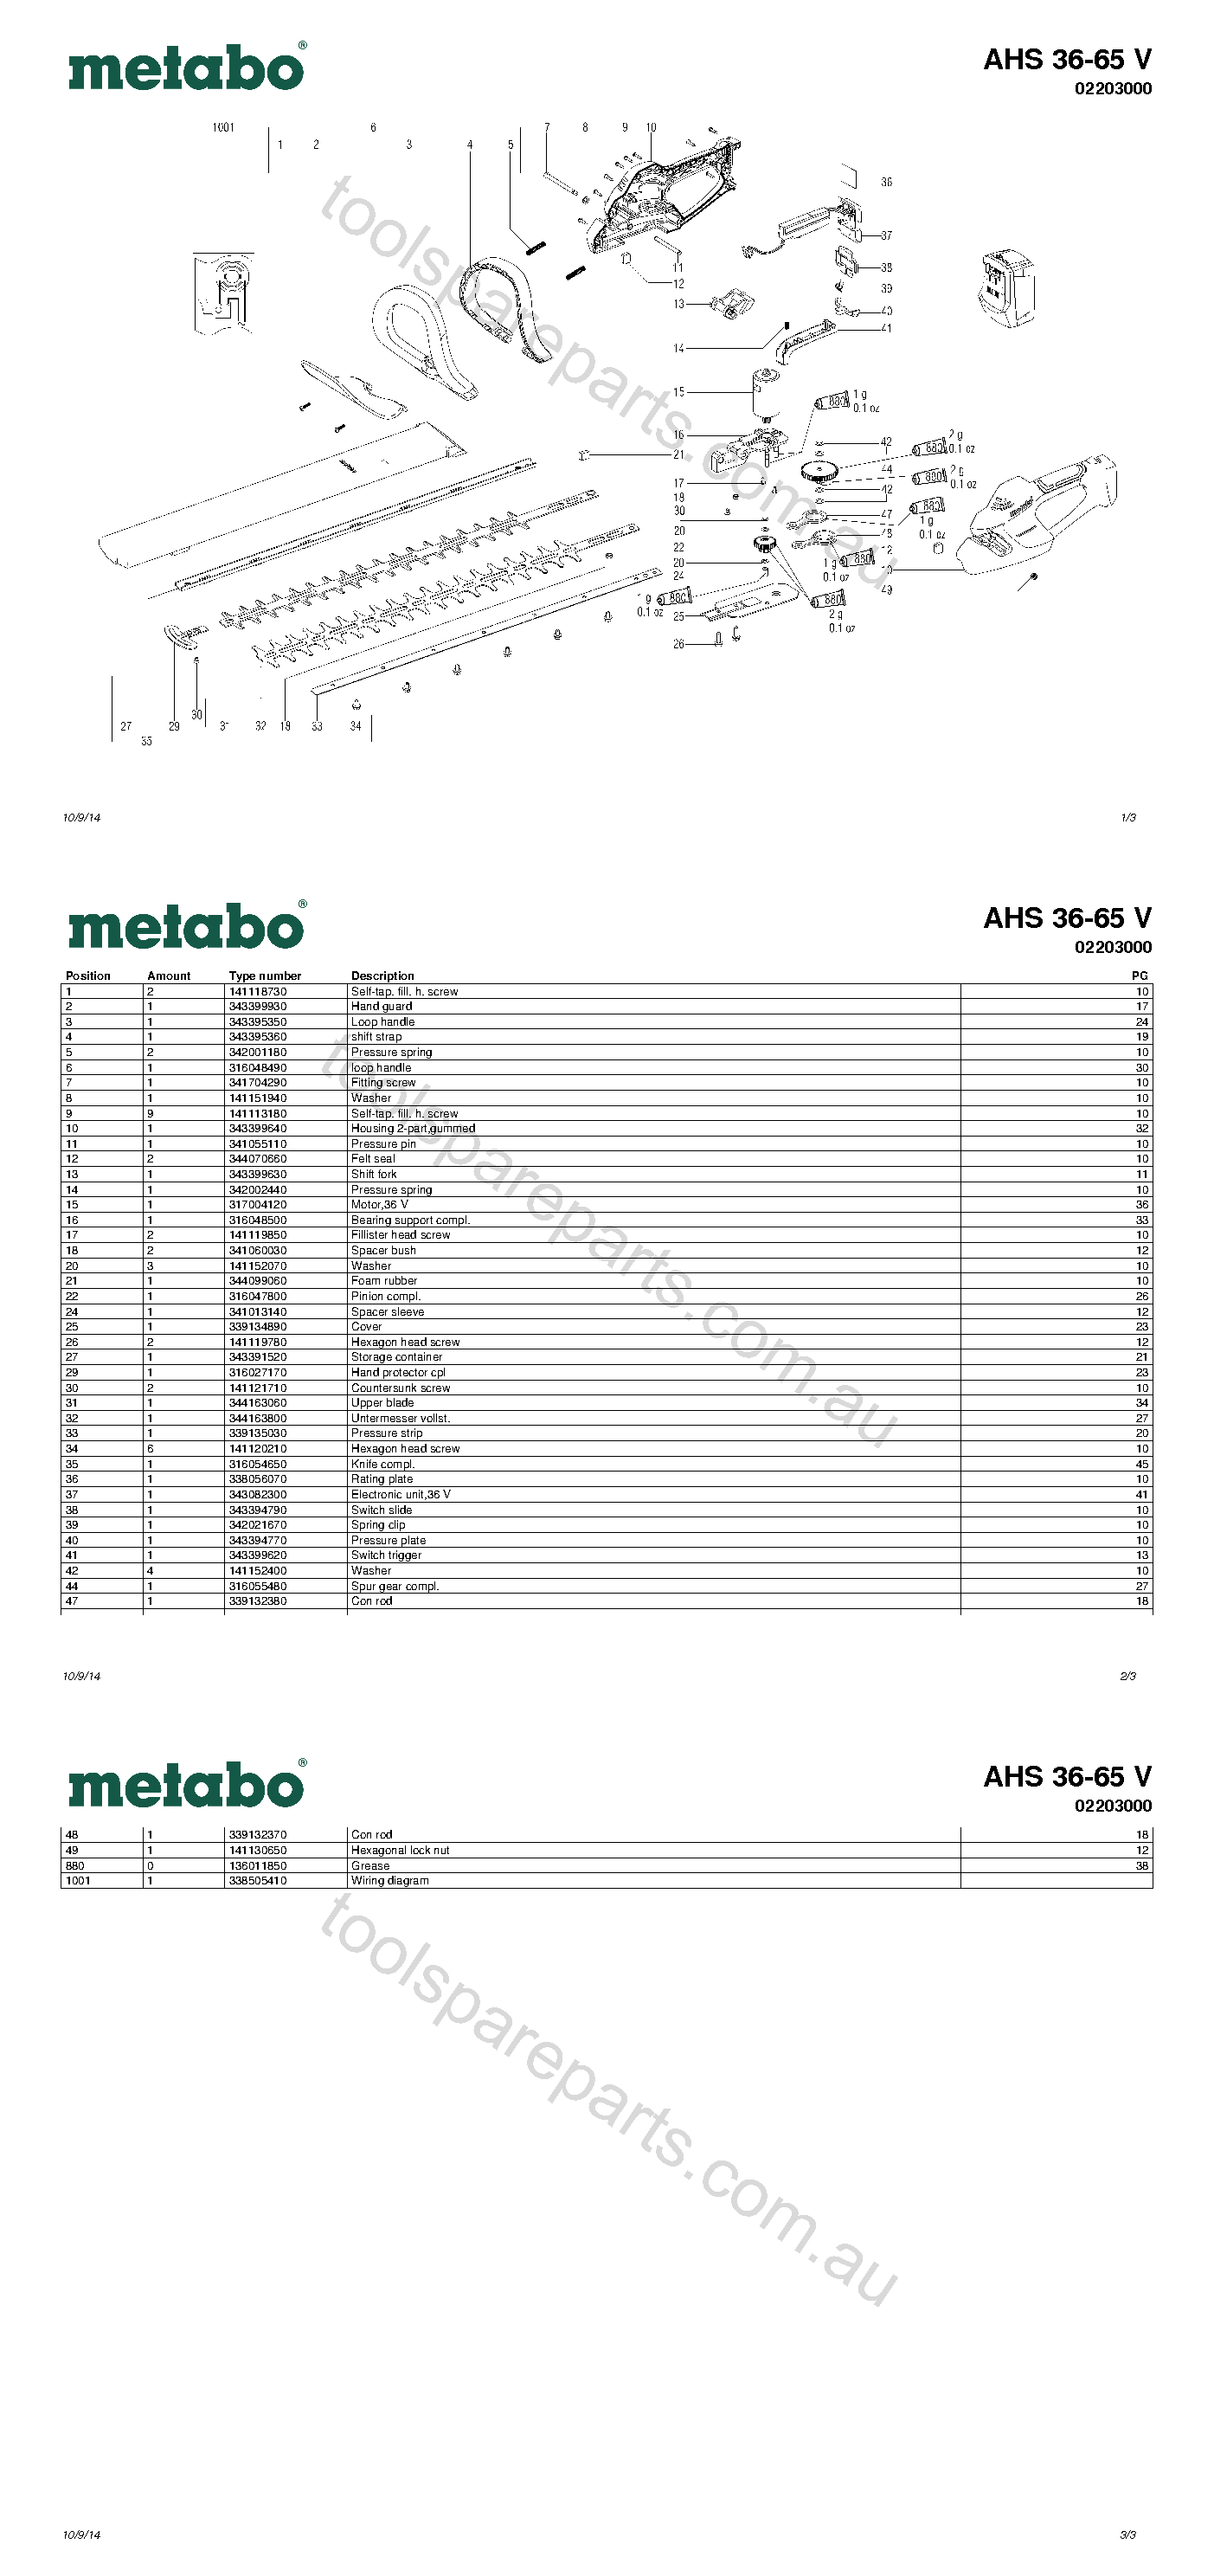 Metabo AHS 36-65 V 02203000  Diagram 1